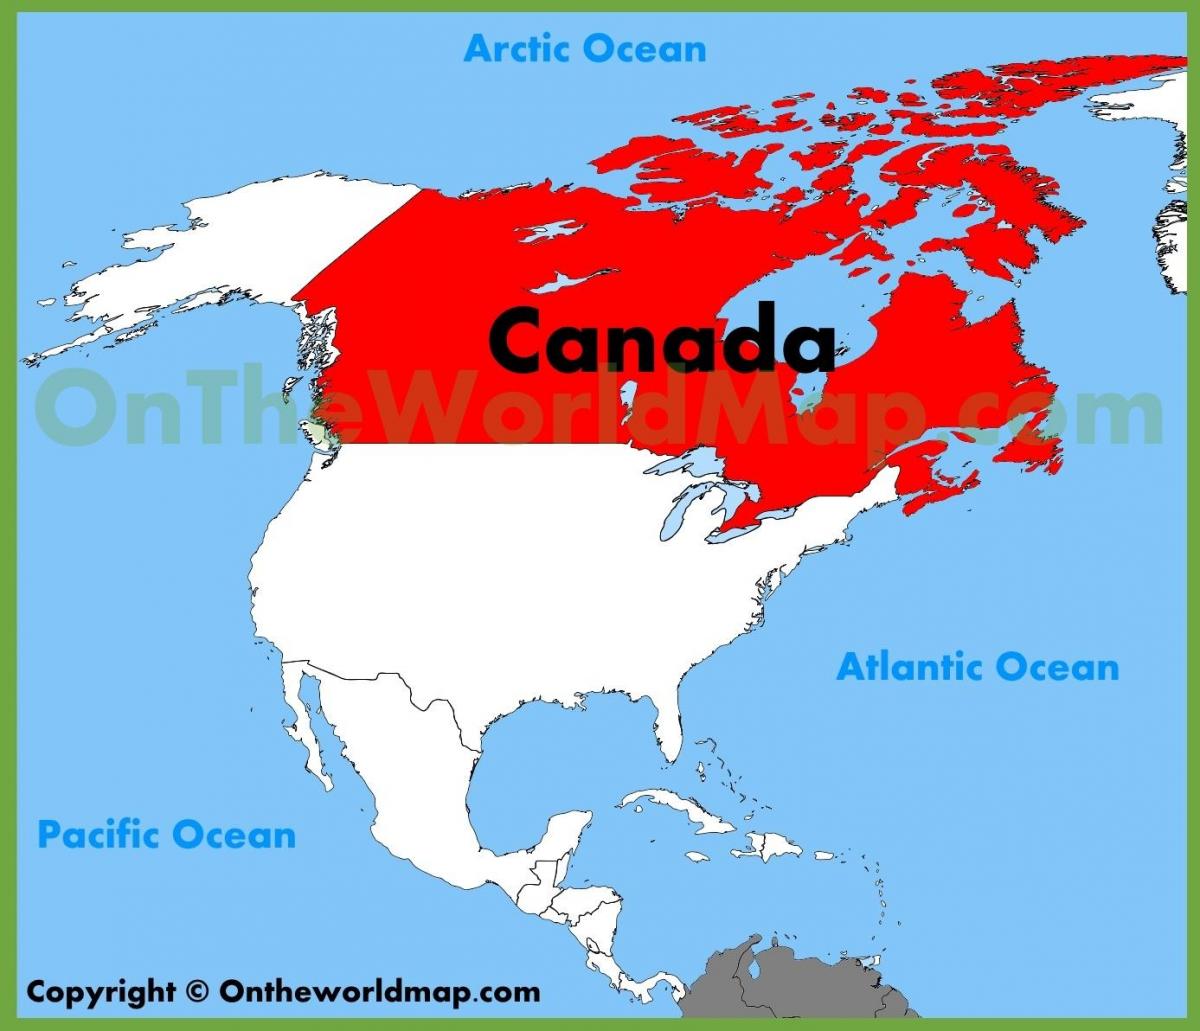 Canadá estados unidos mapa